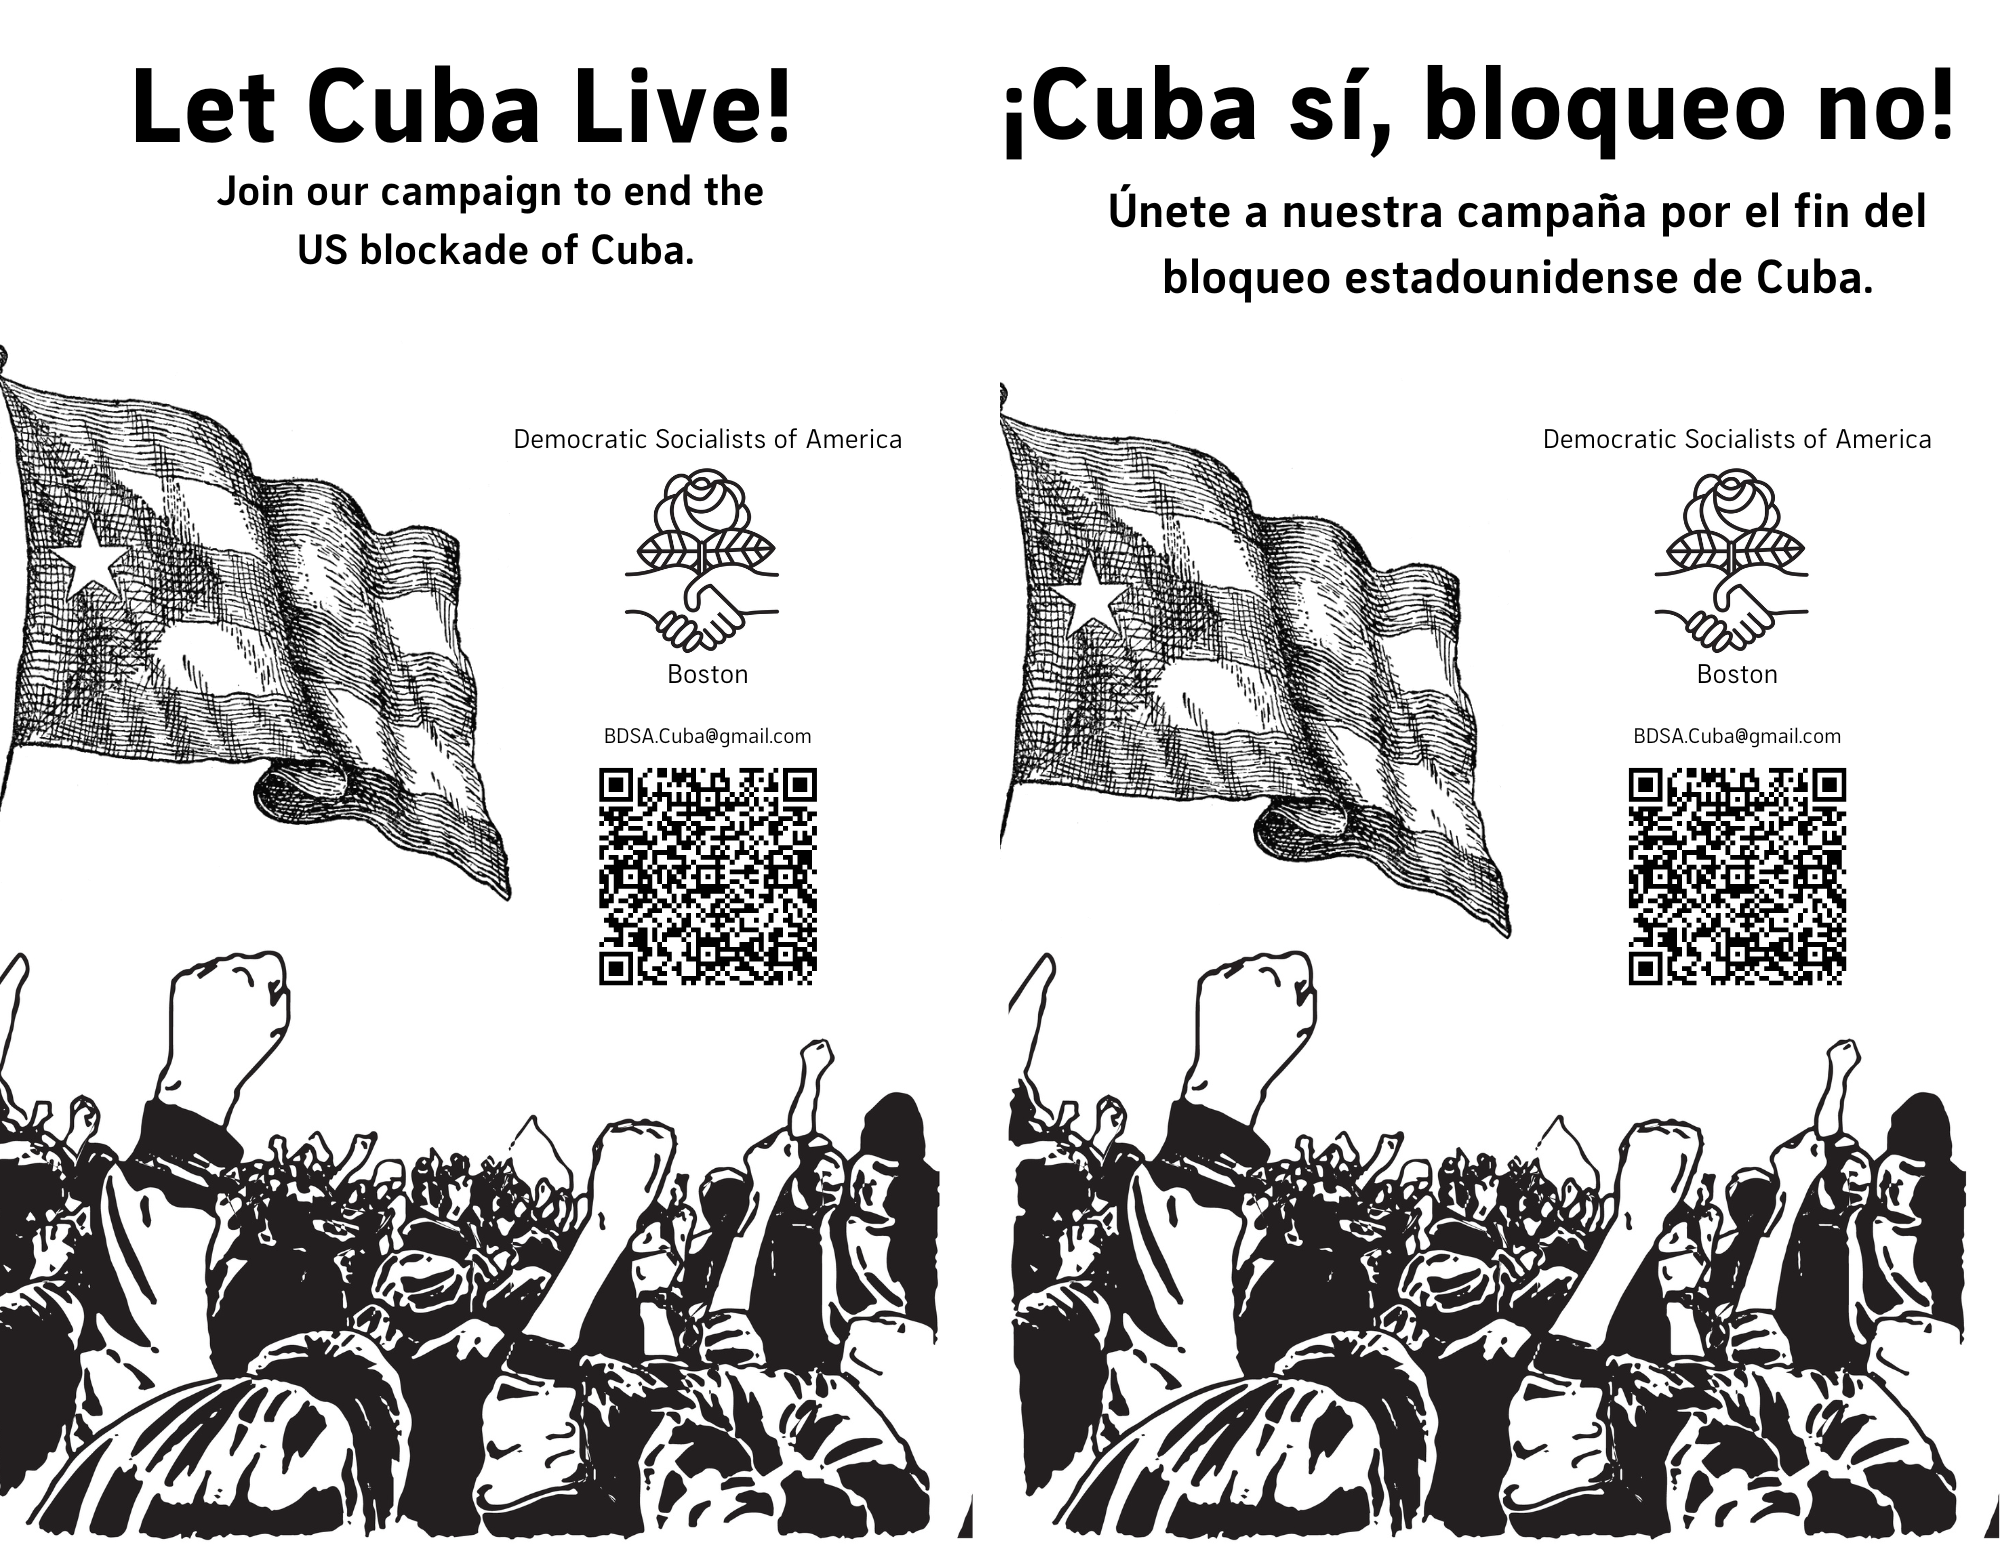 End the blockade on Cuba!